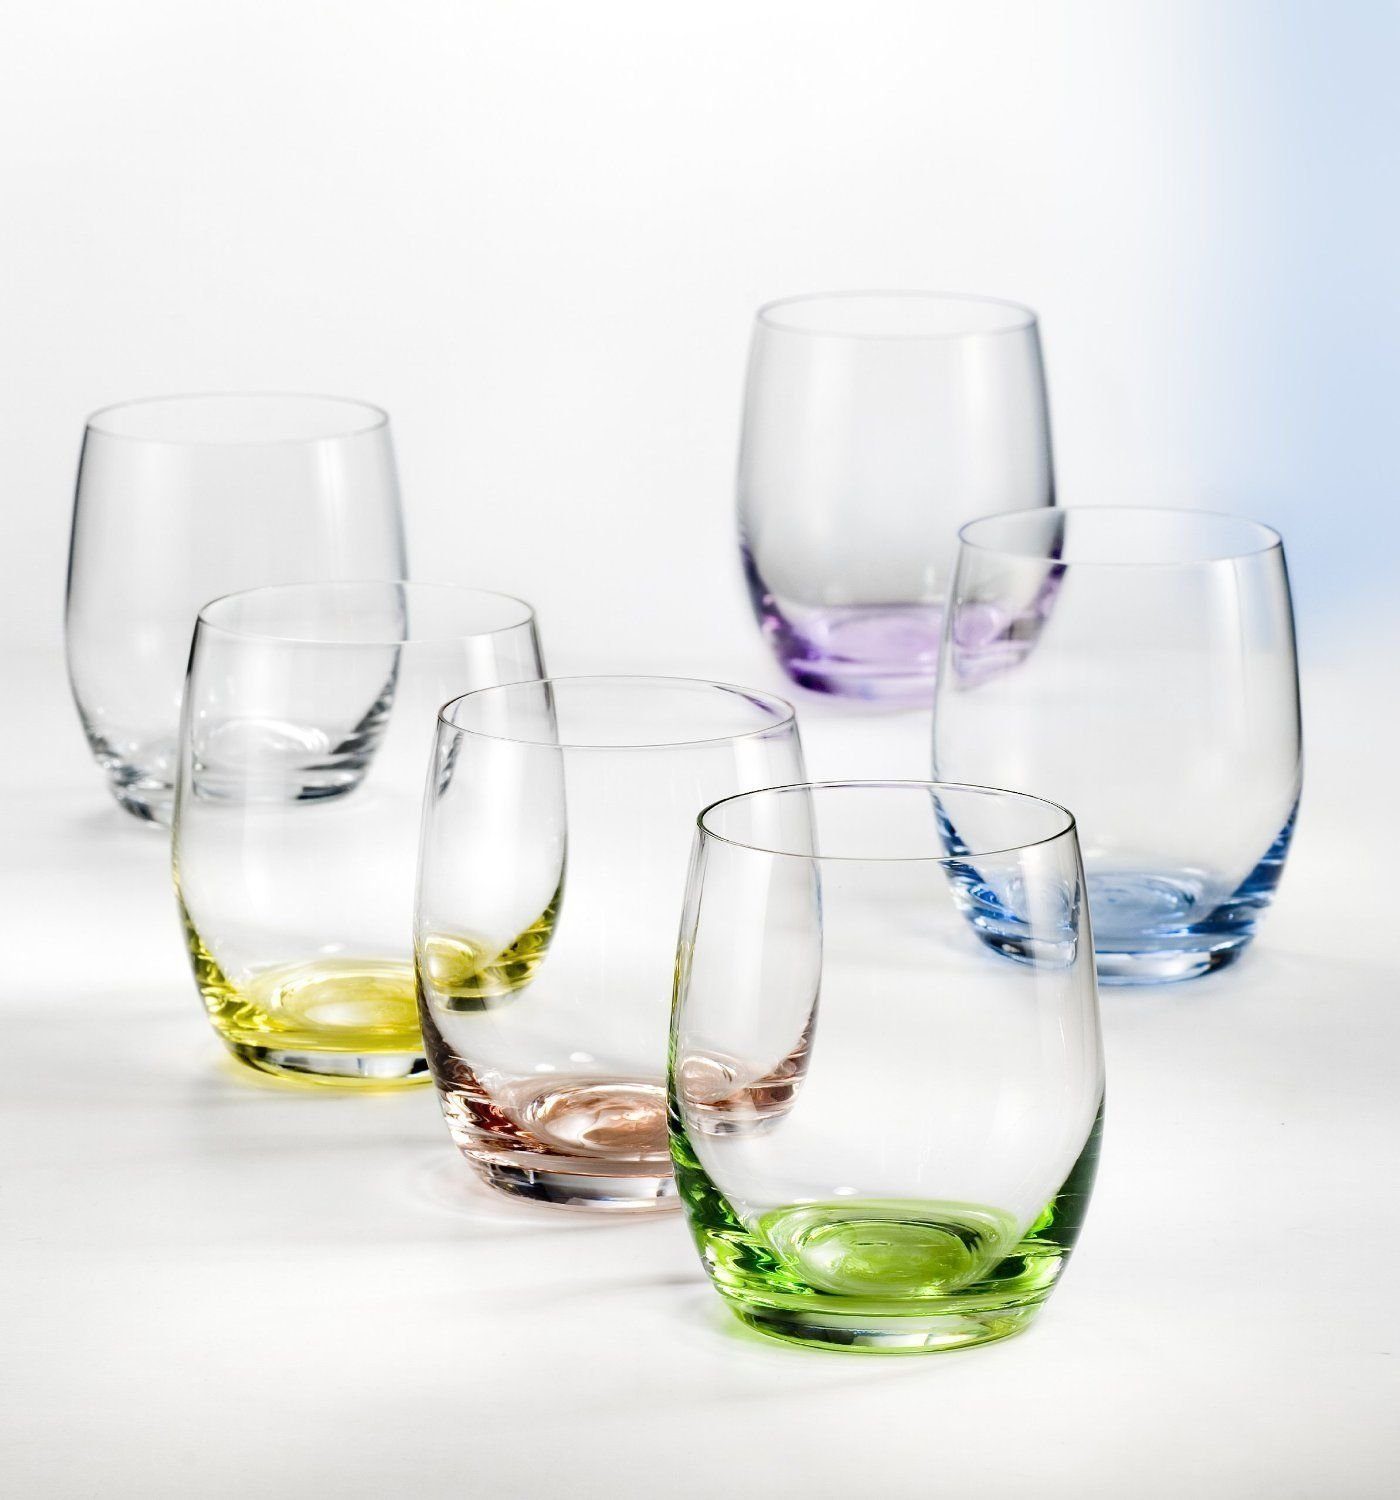 Crystalex Gläser-Set Wassergläser Whiskygläser Rainbow 300 ml mehrfarbig 6er Set, Kristallglas, Farbig: gelb, grün, blau, lila, grau, rot, Kristallglas